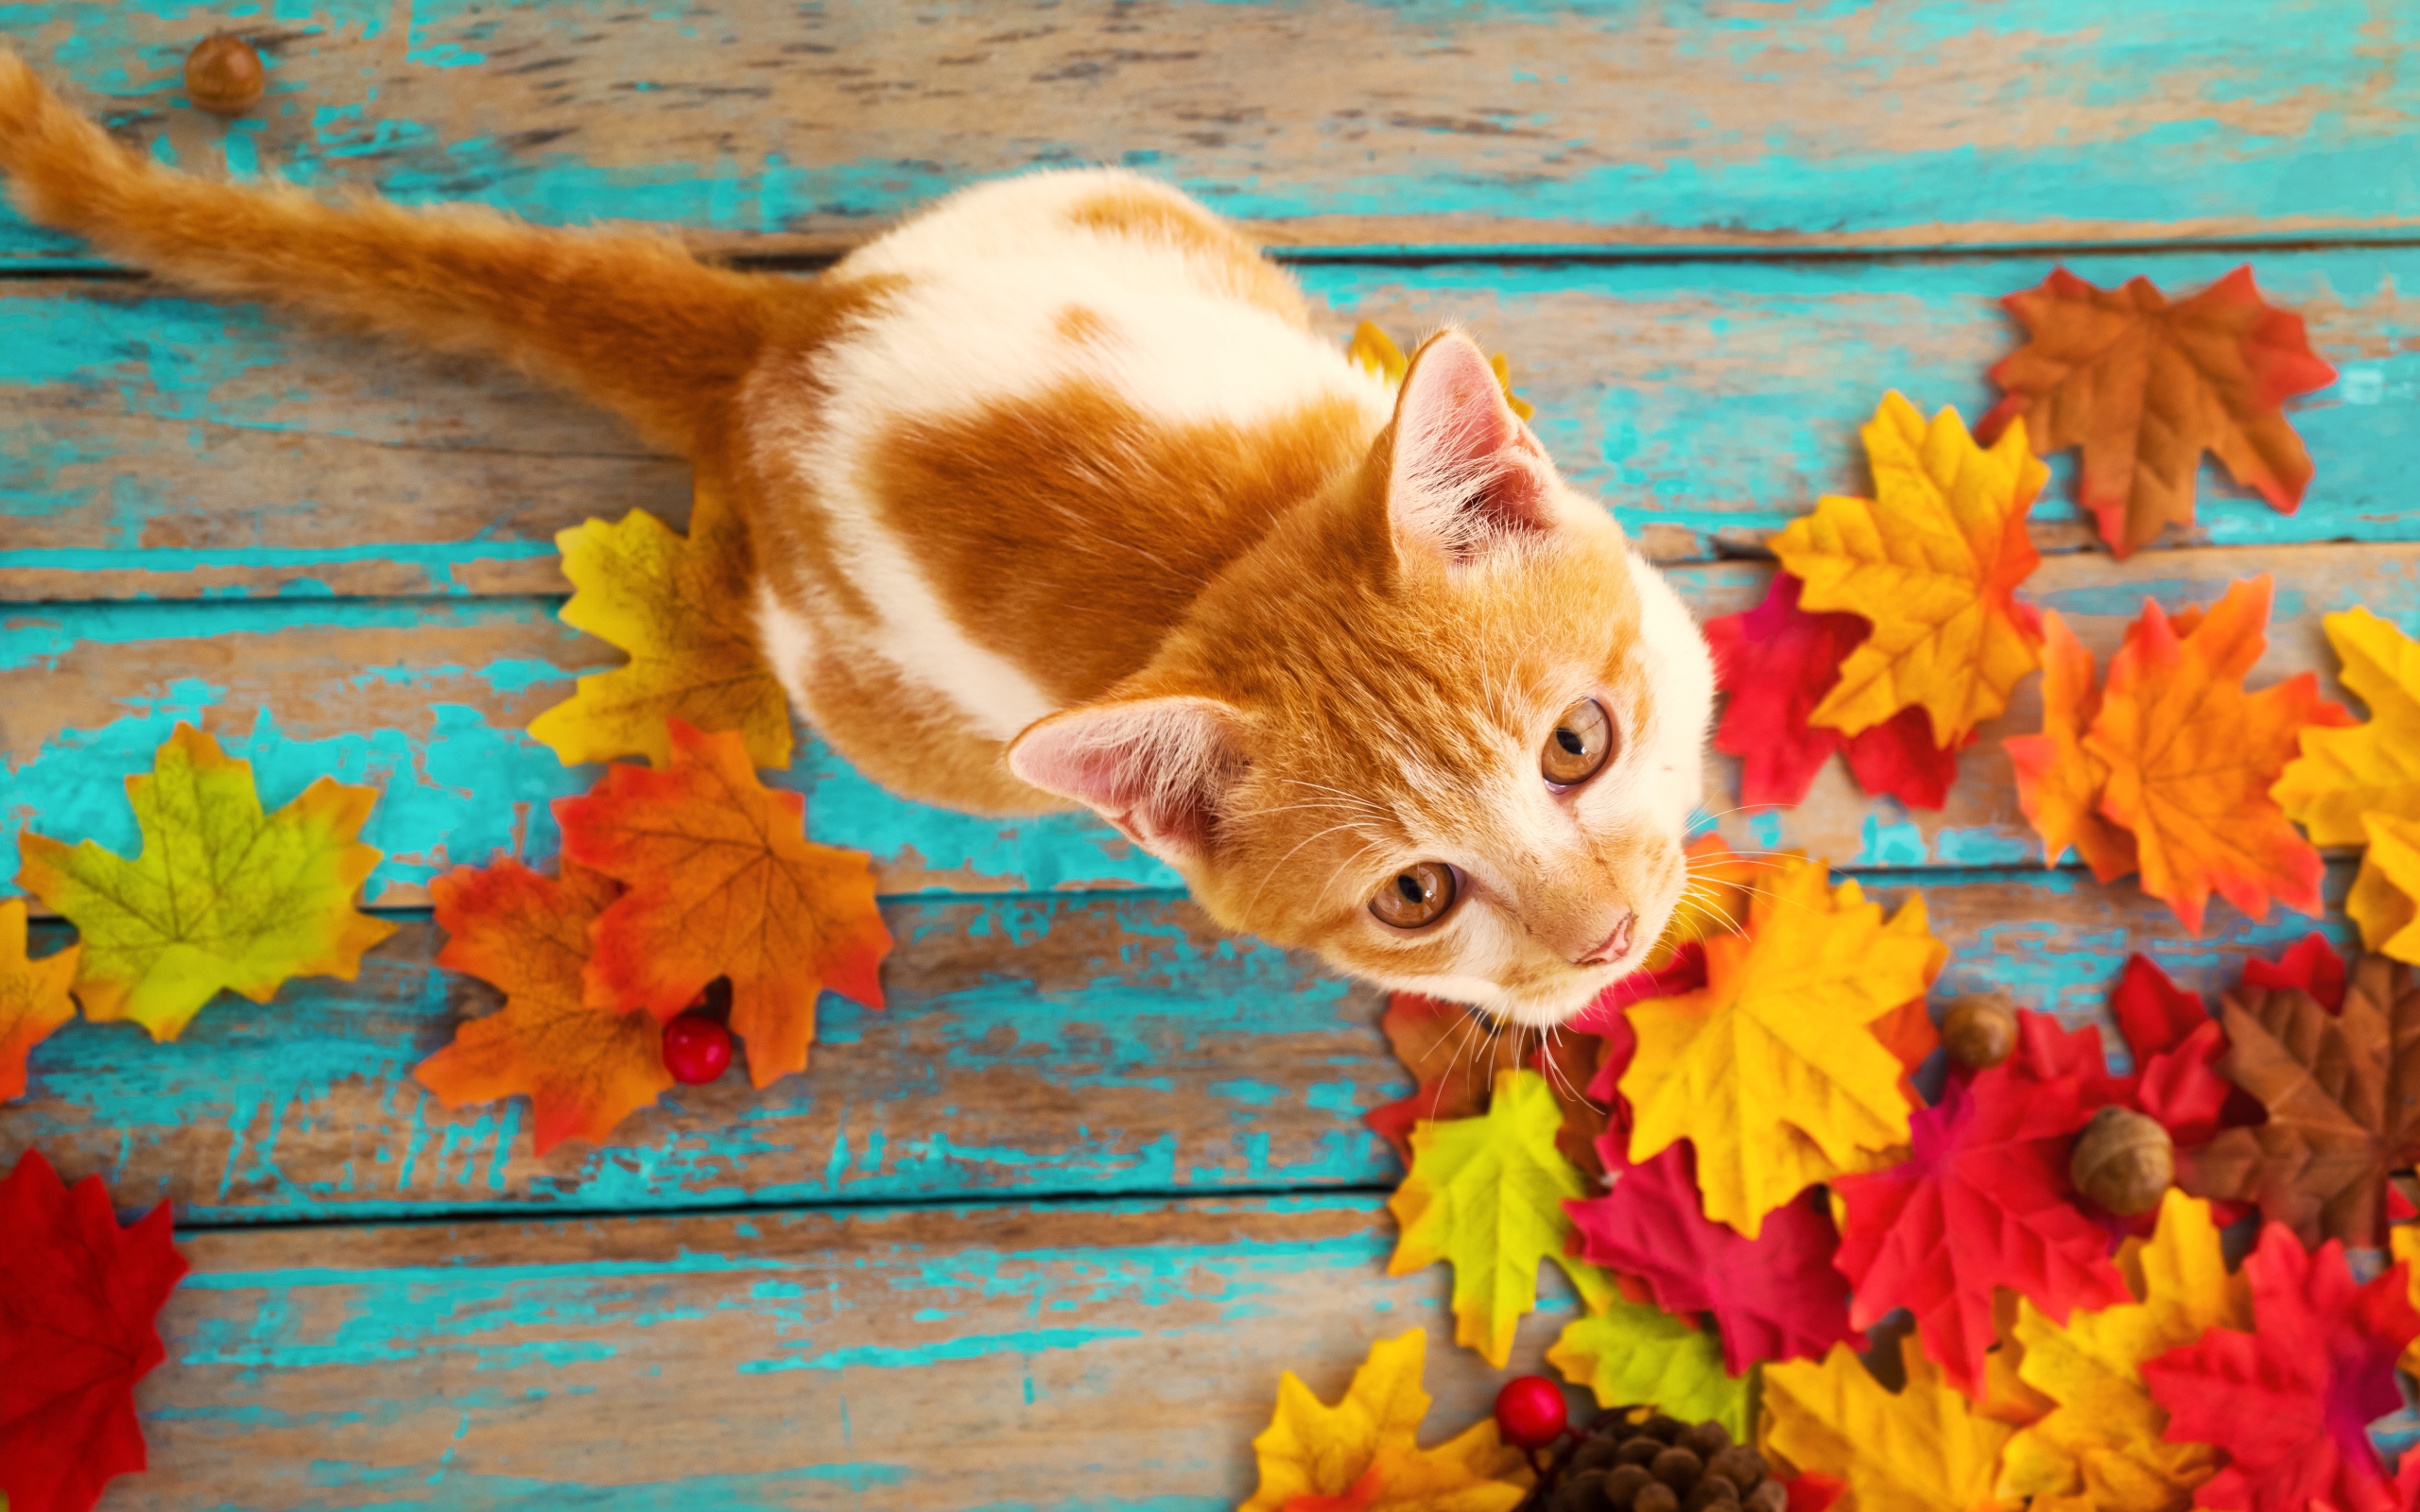 Красивый рыжий кот на столе с опавшими листьями